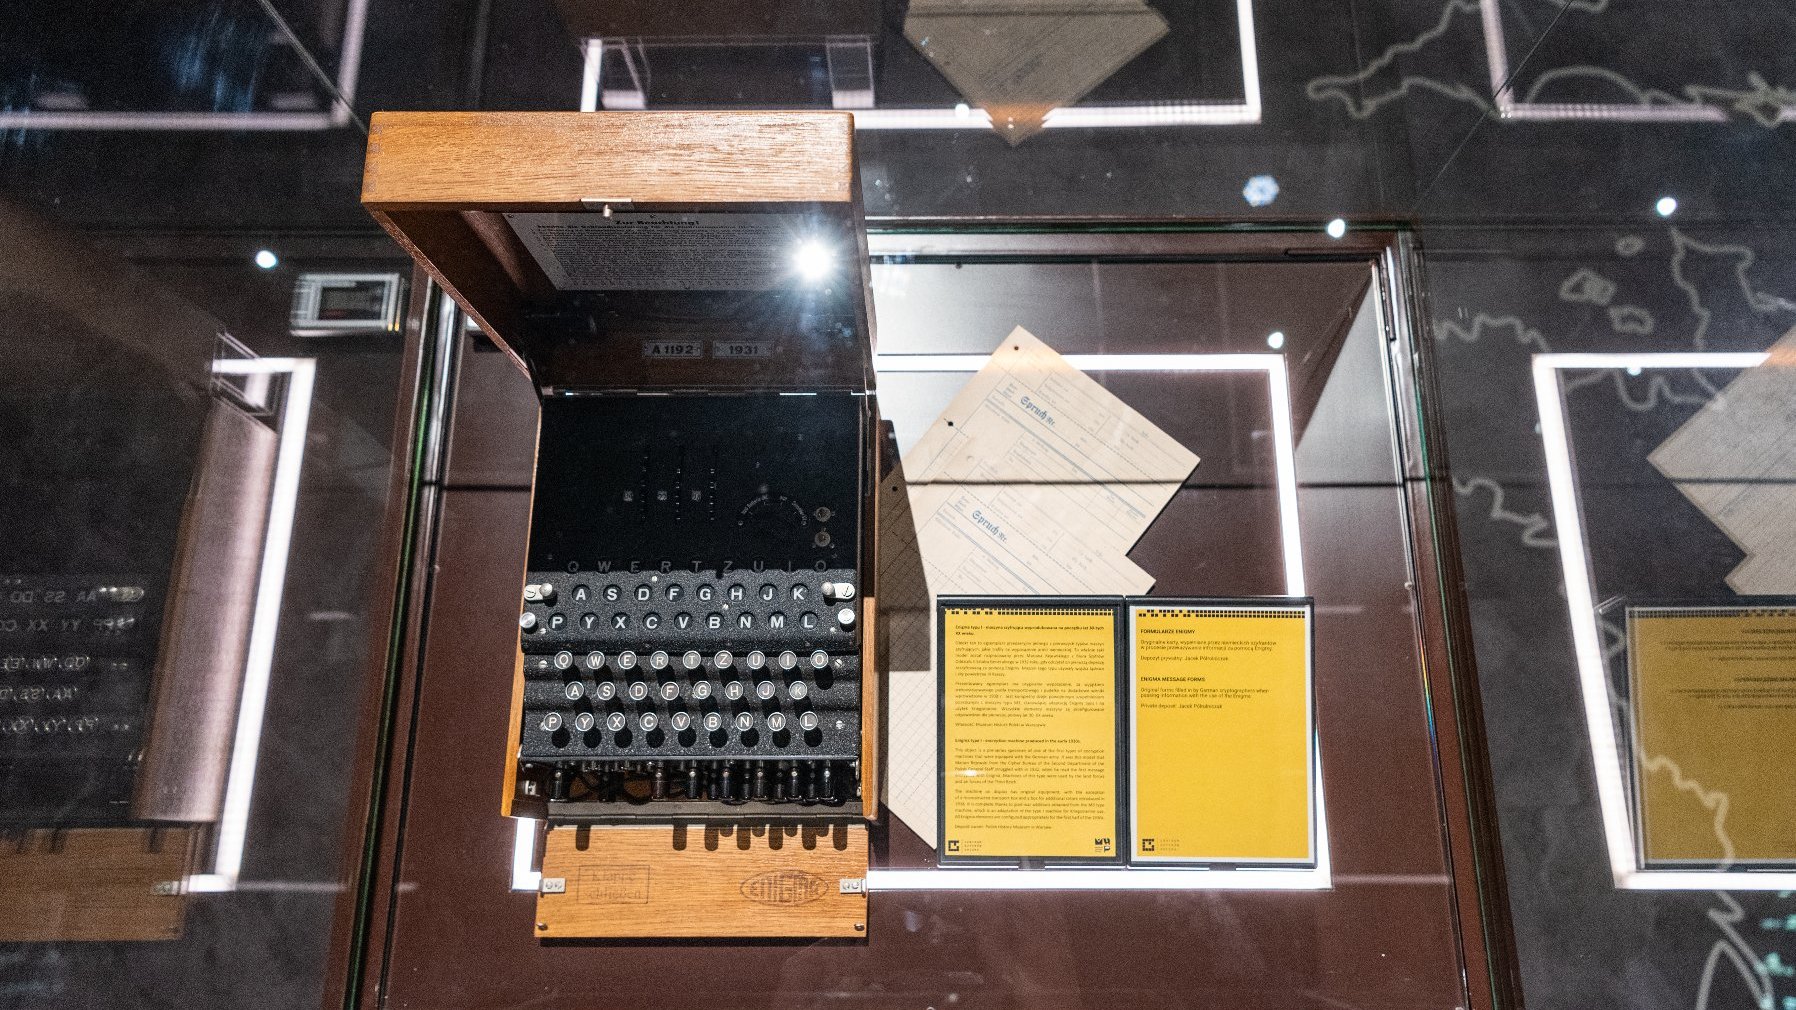 Zdjęcie przedstawia widok z góry na niemiecką maszynę szyfrującą Enigma umieszczoną w gablocie.